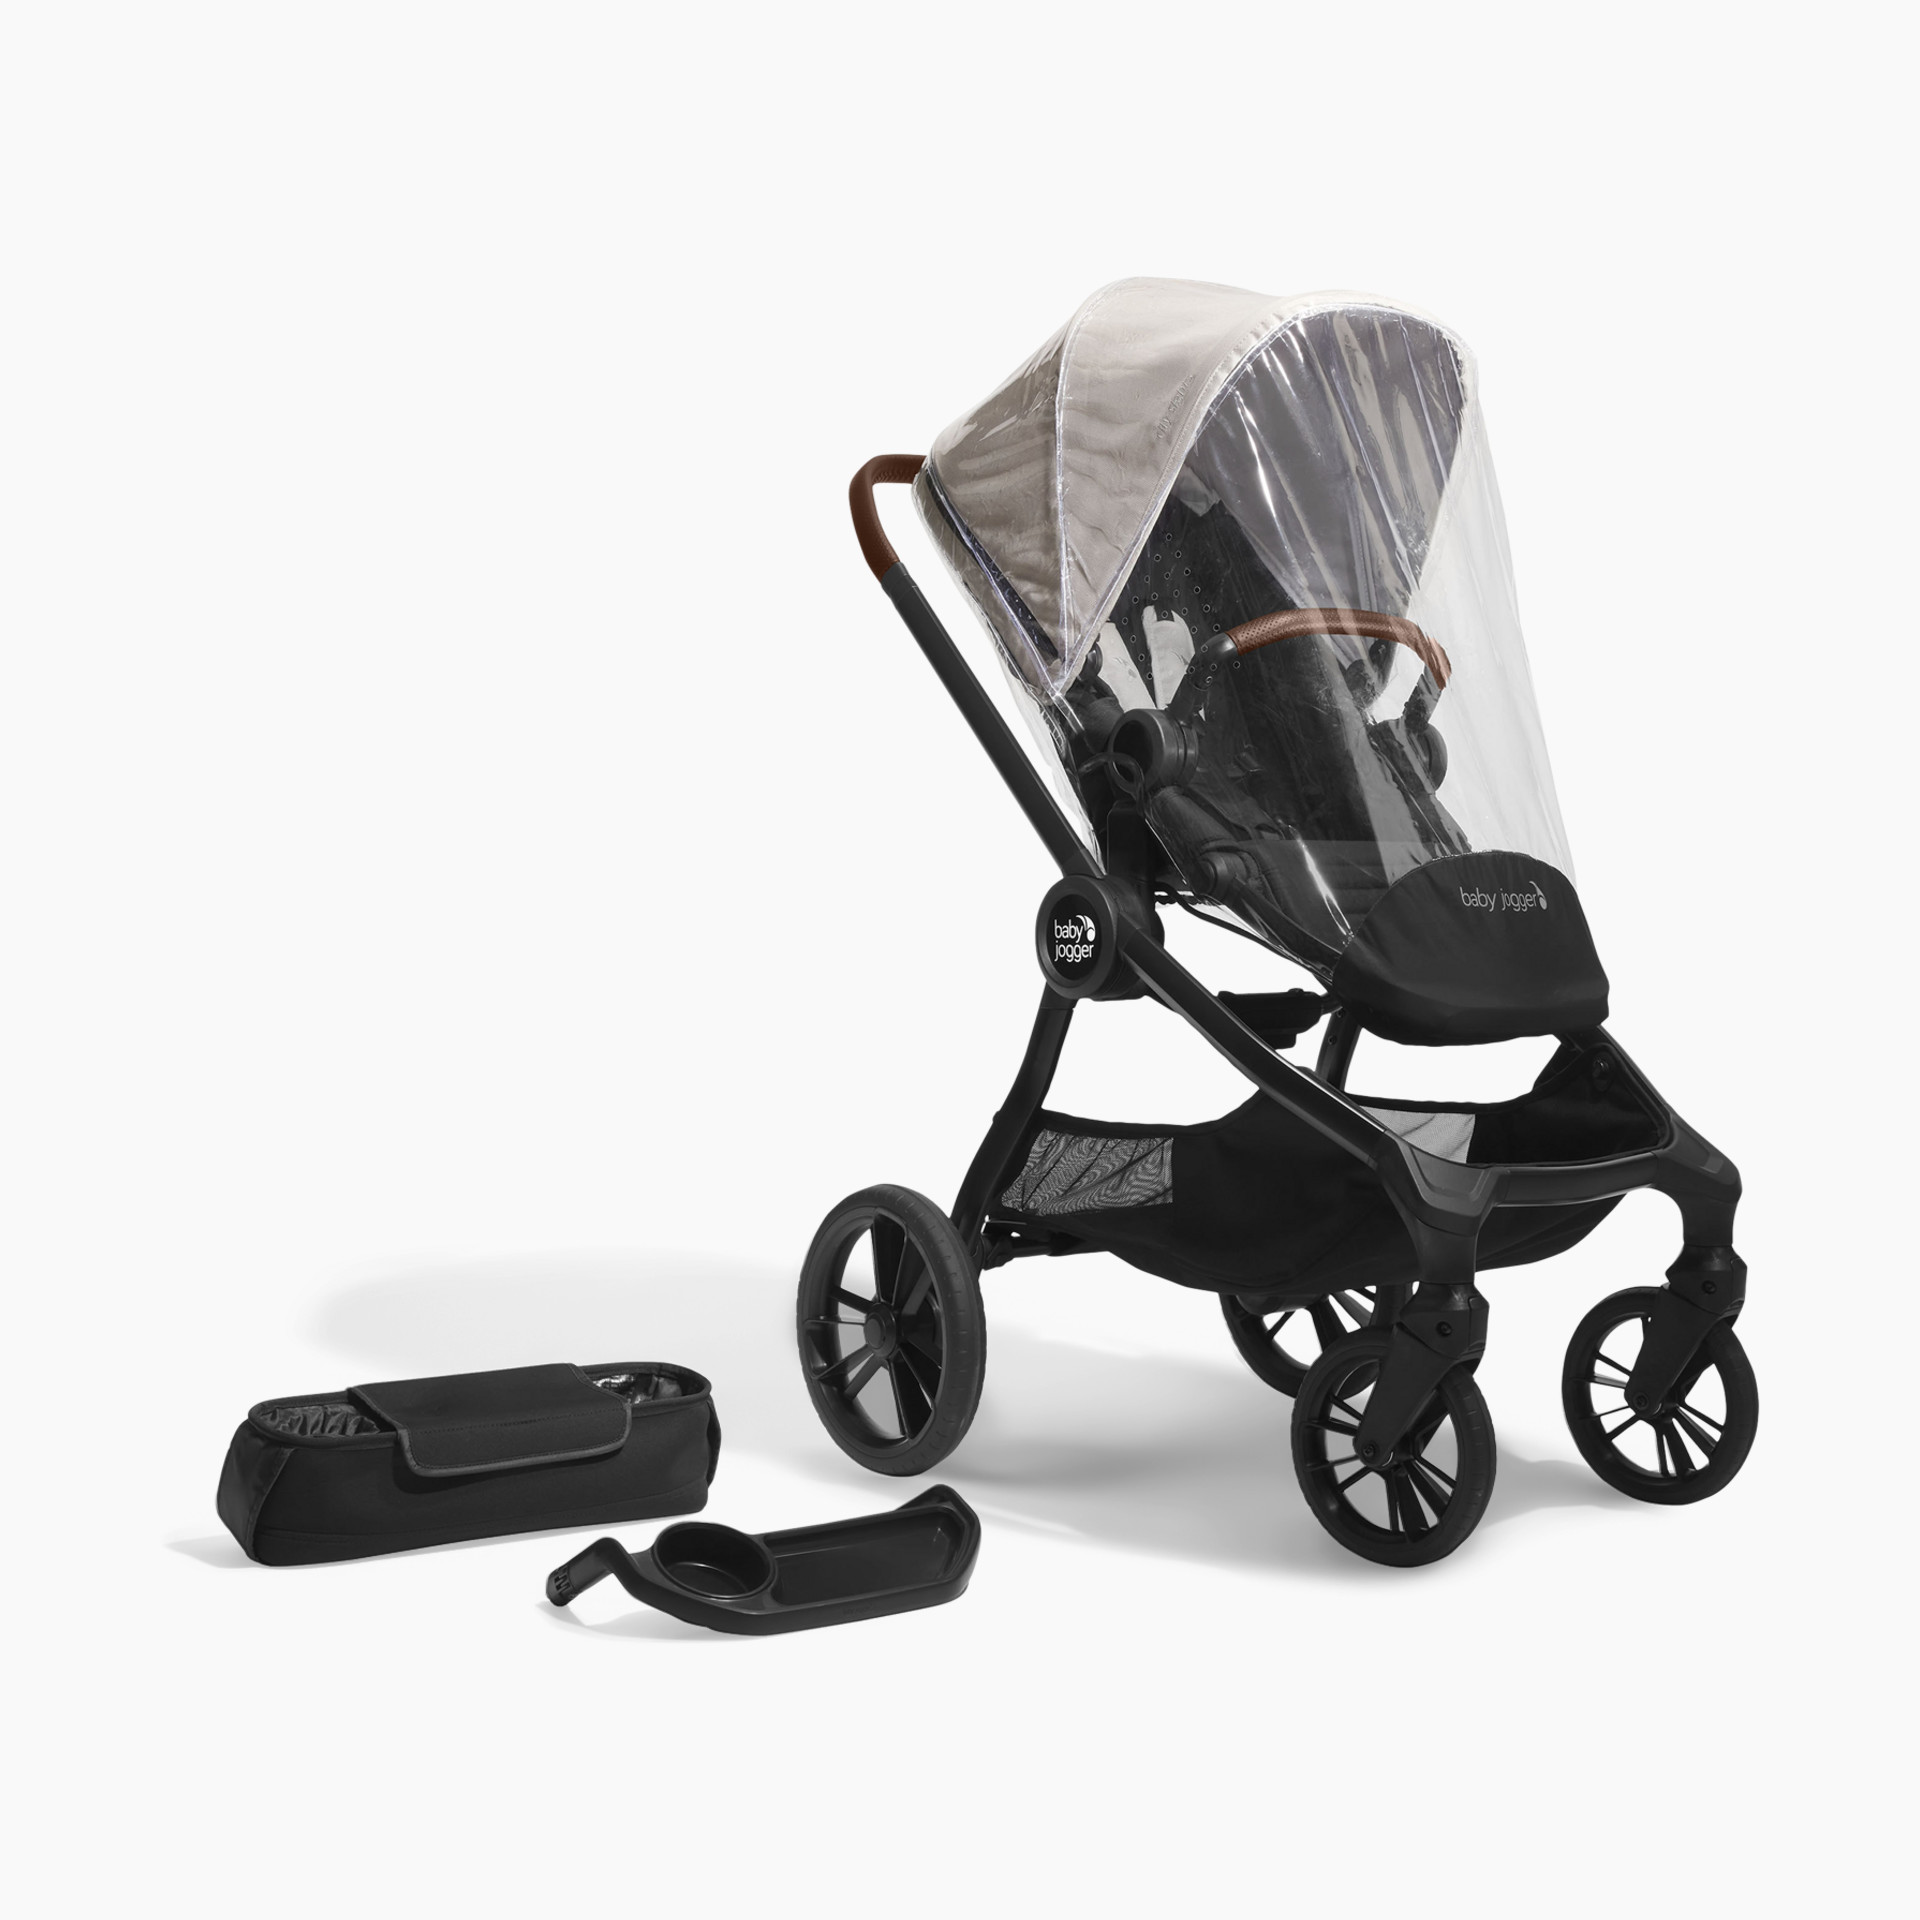 Bevæger sig ikke gået i stykker Klappe Baby Jogger City Sights Stroller All-in-One Bundle - Eco Collection |  Babylist Shop